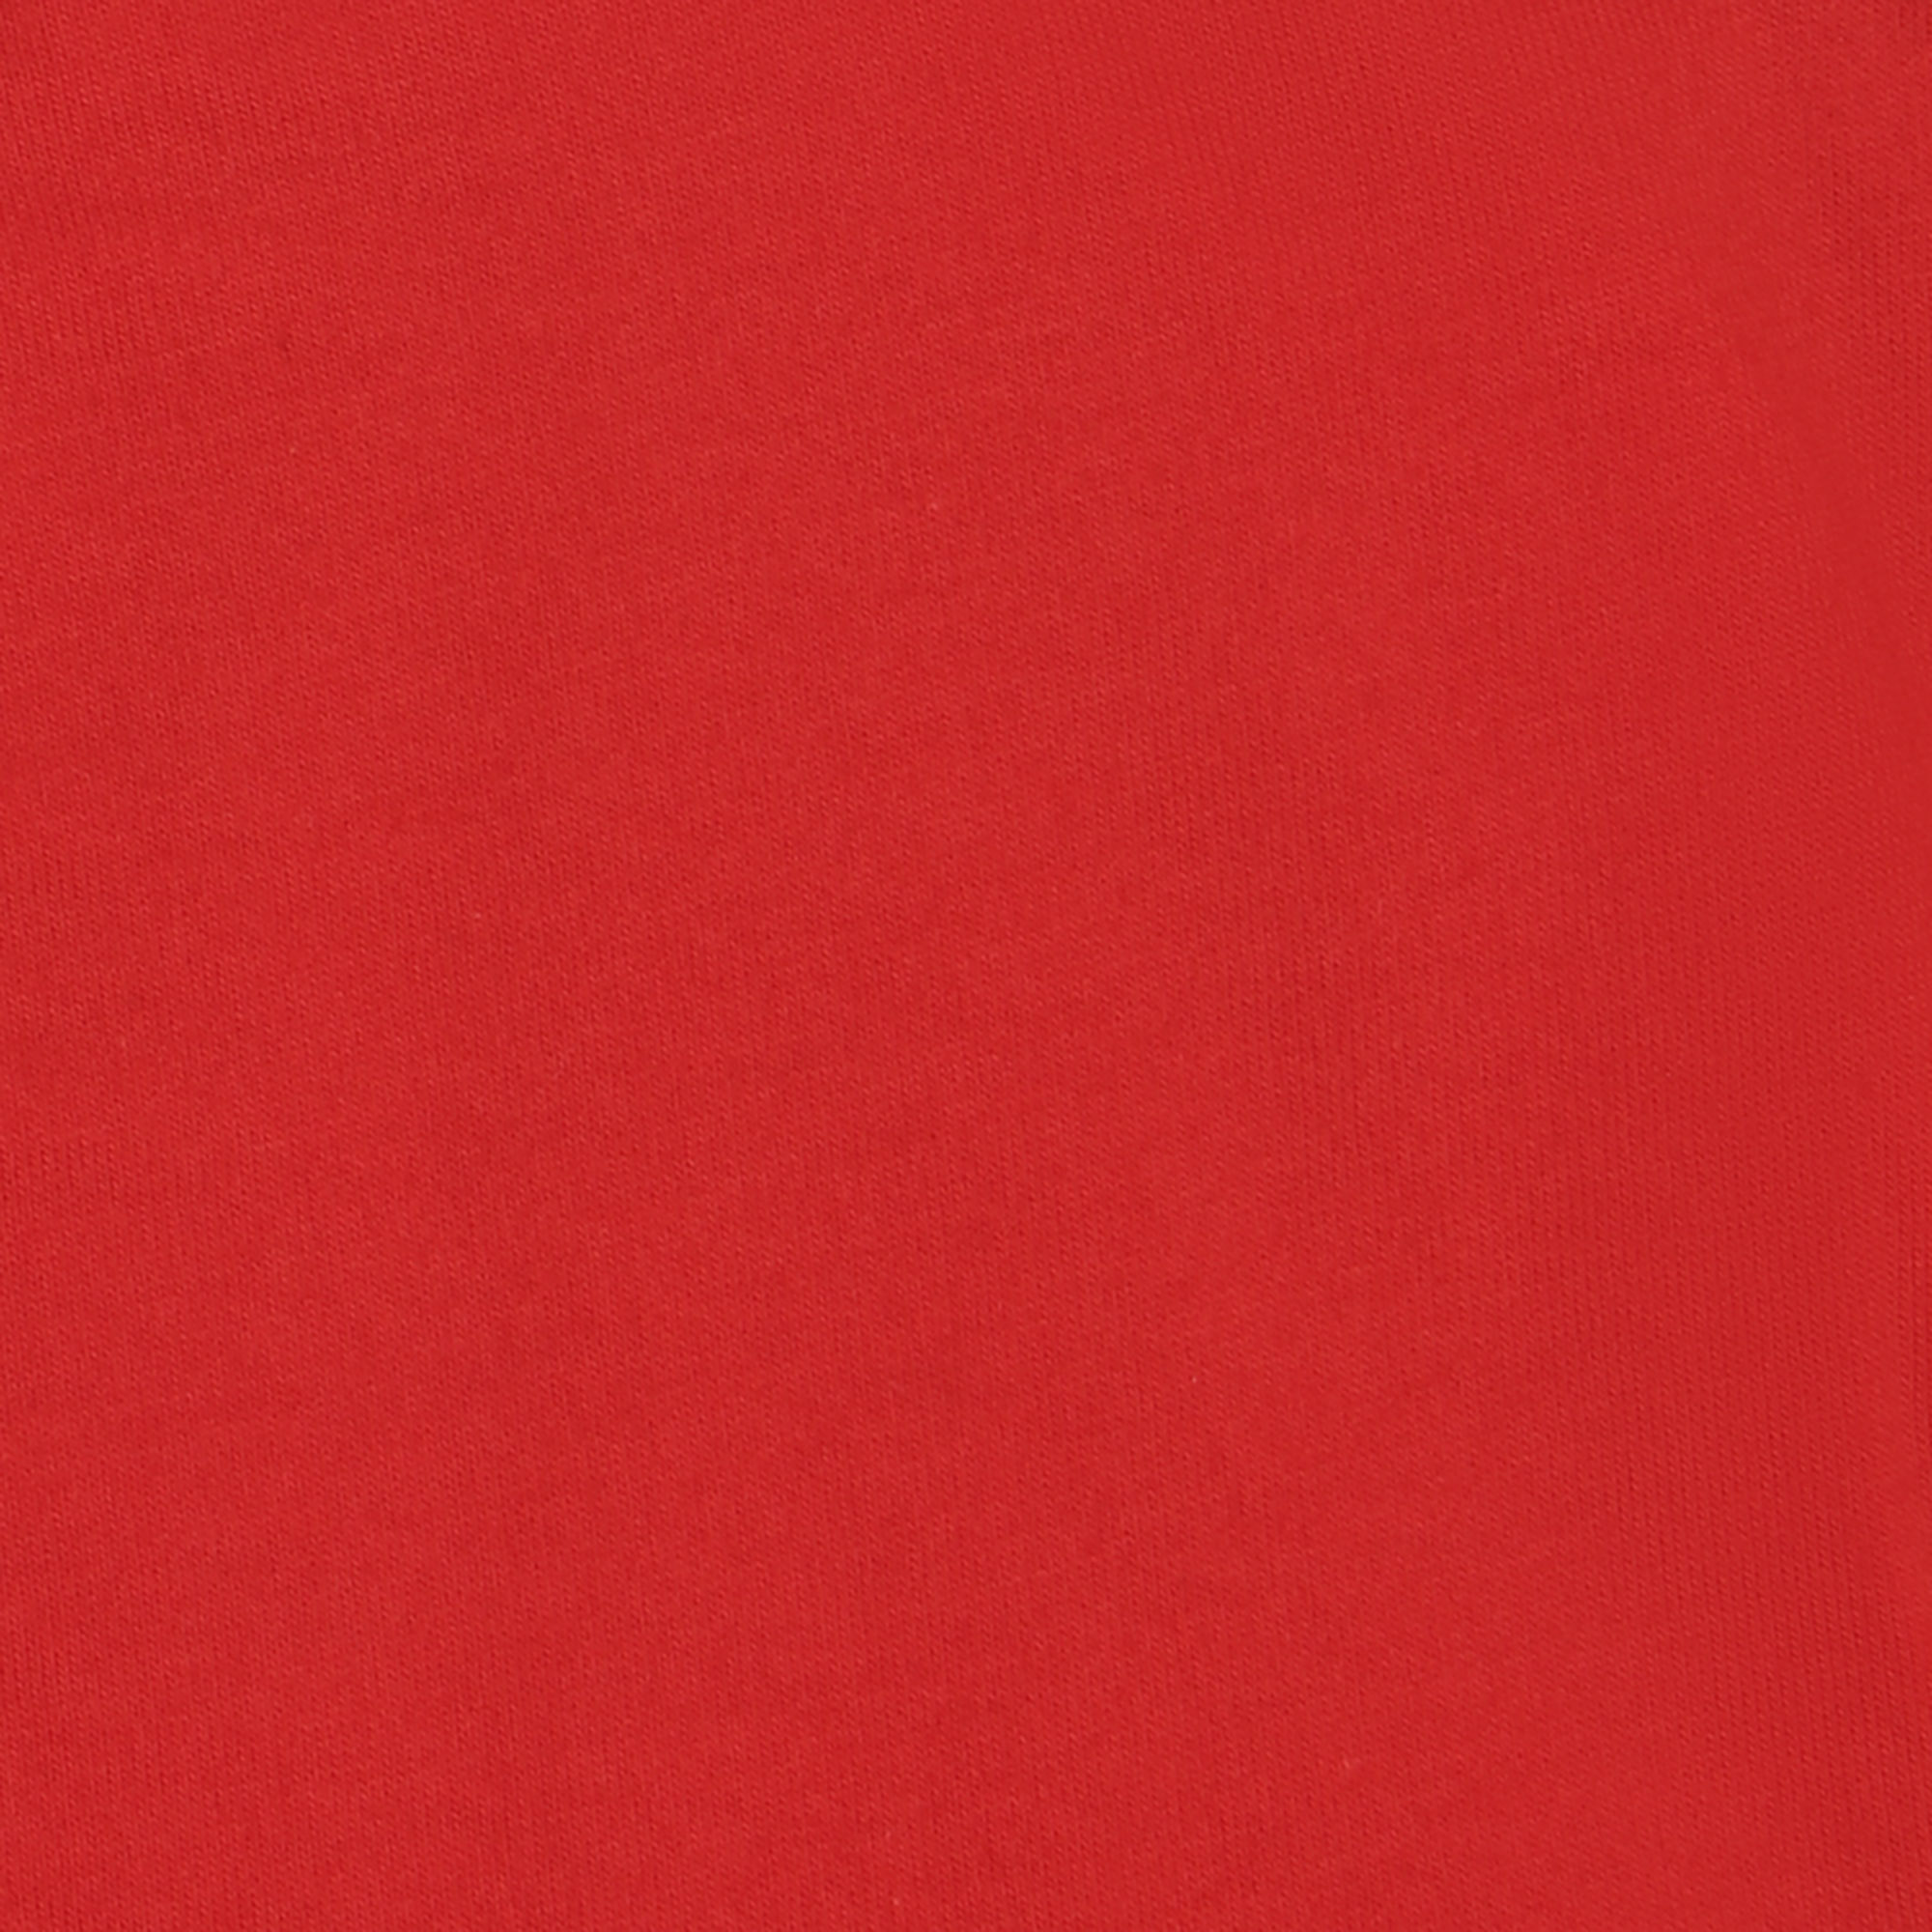 Мужская футболка Pantelemone MF-913 52 красная, цвет красный, размер 52 - фото 3